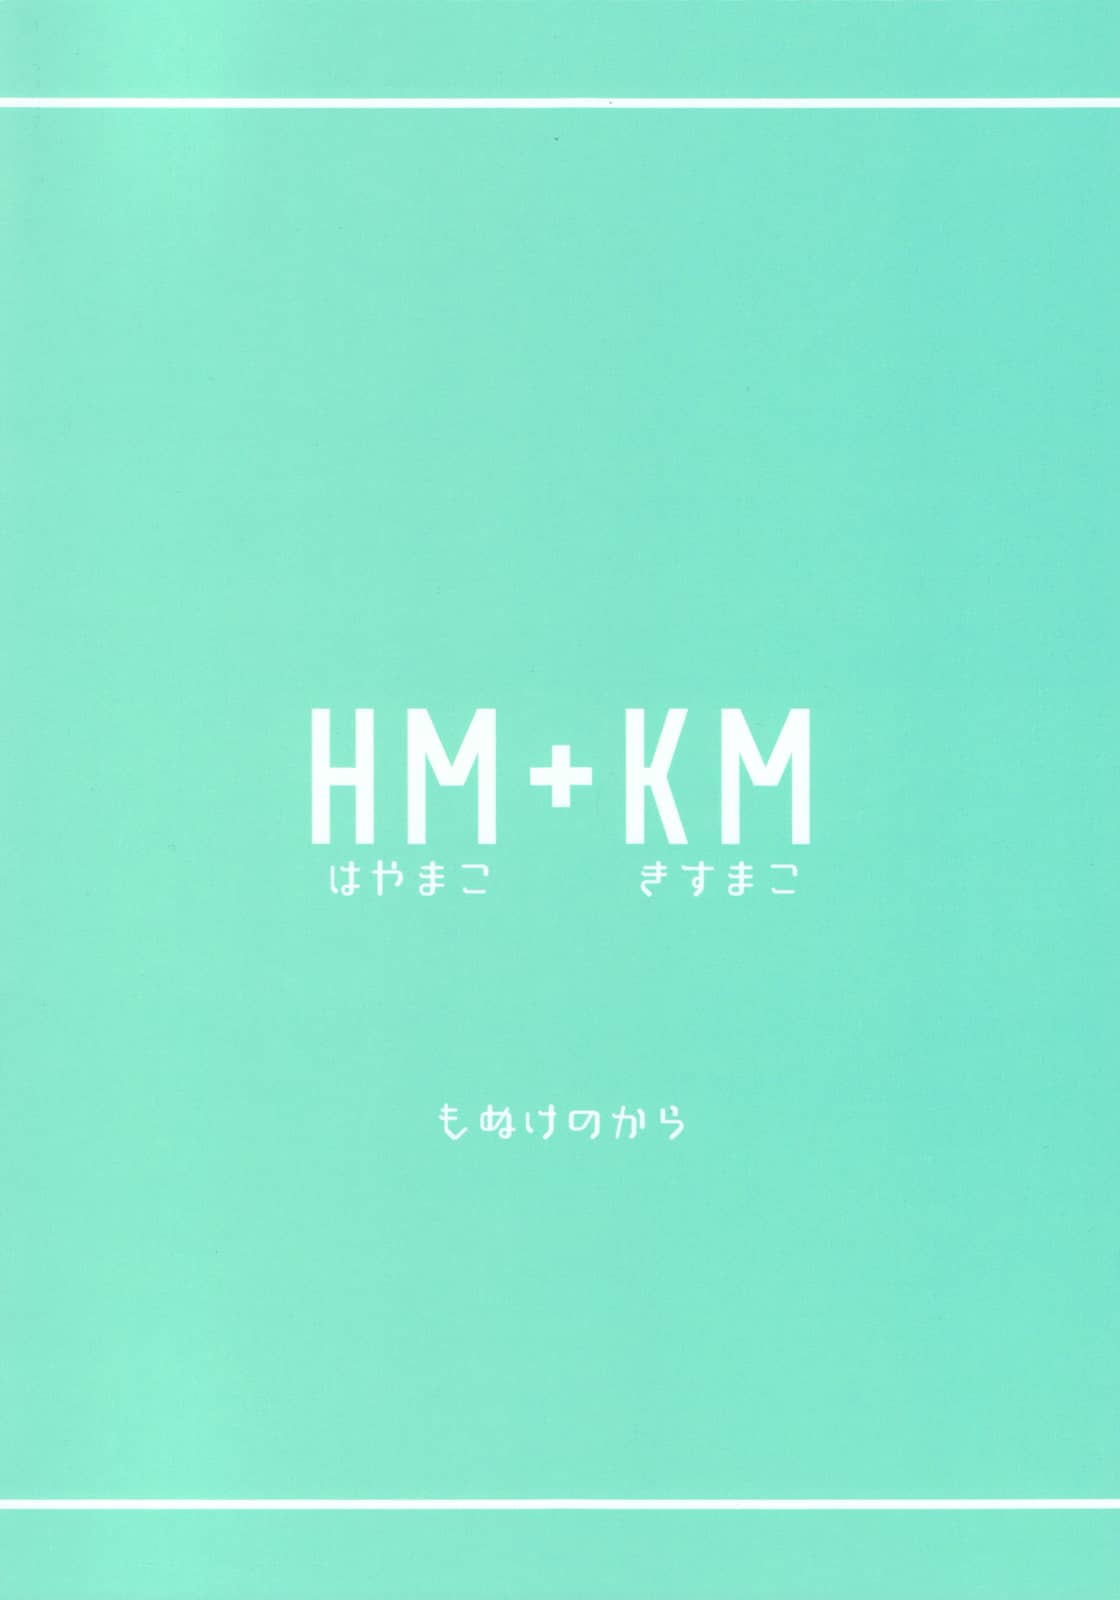 HM + KM - Foto 34